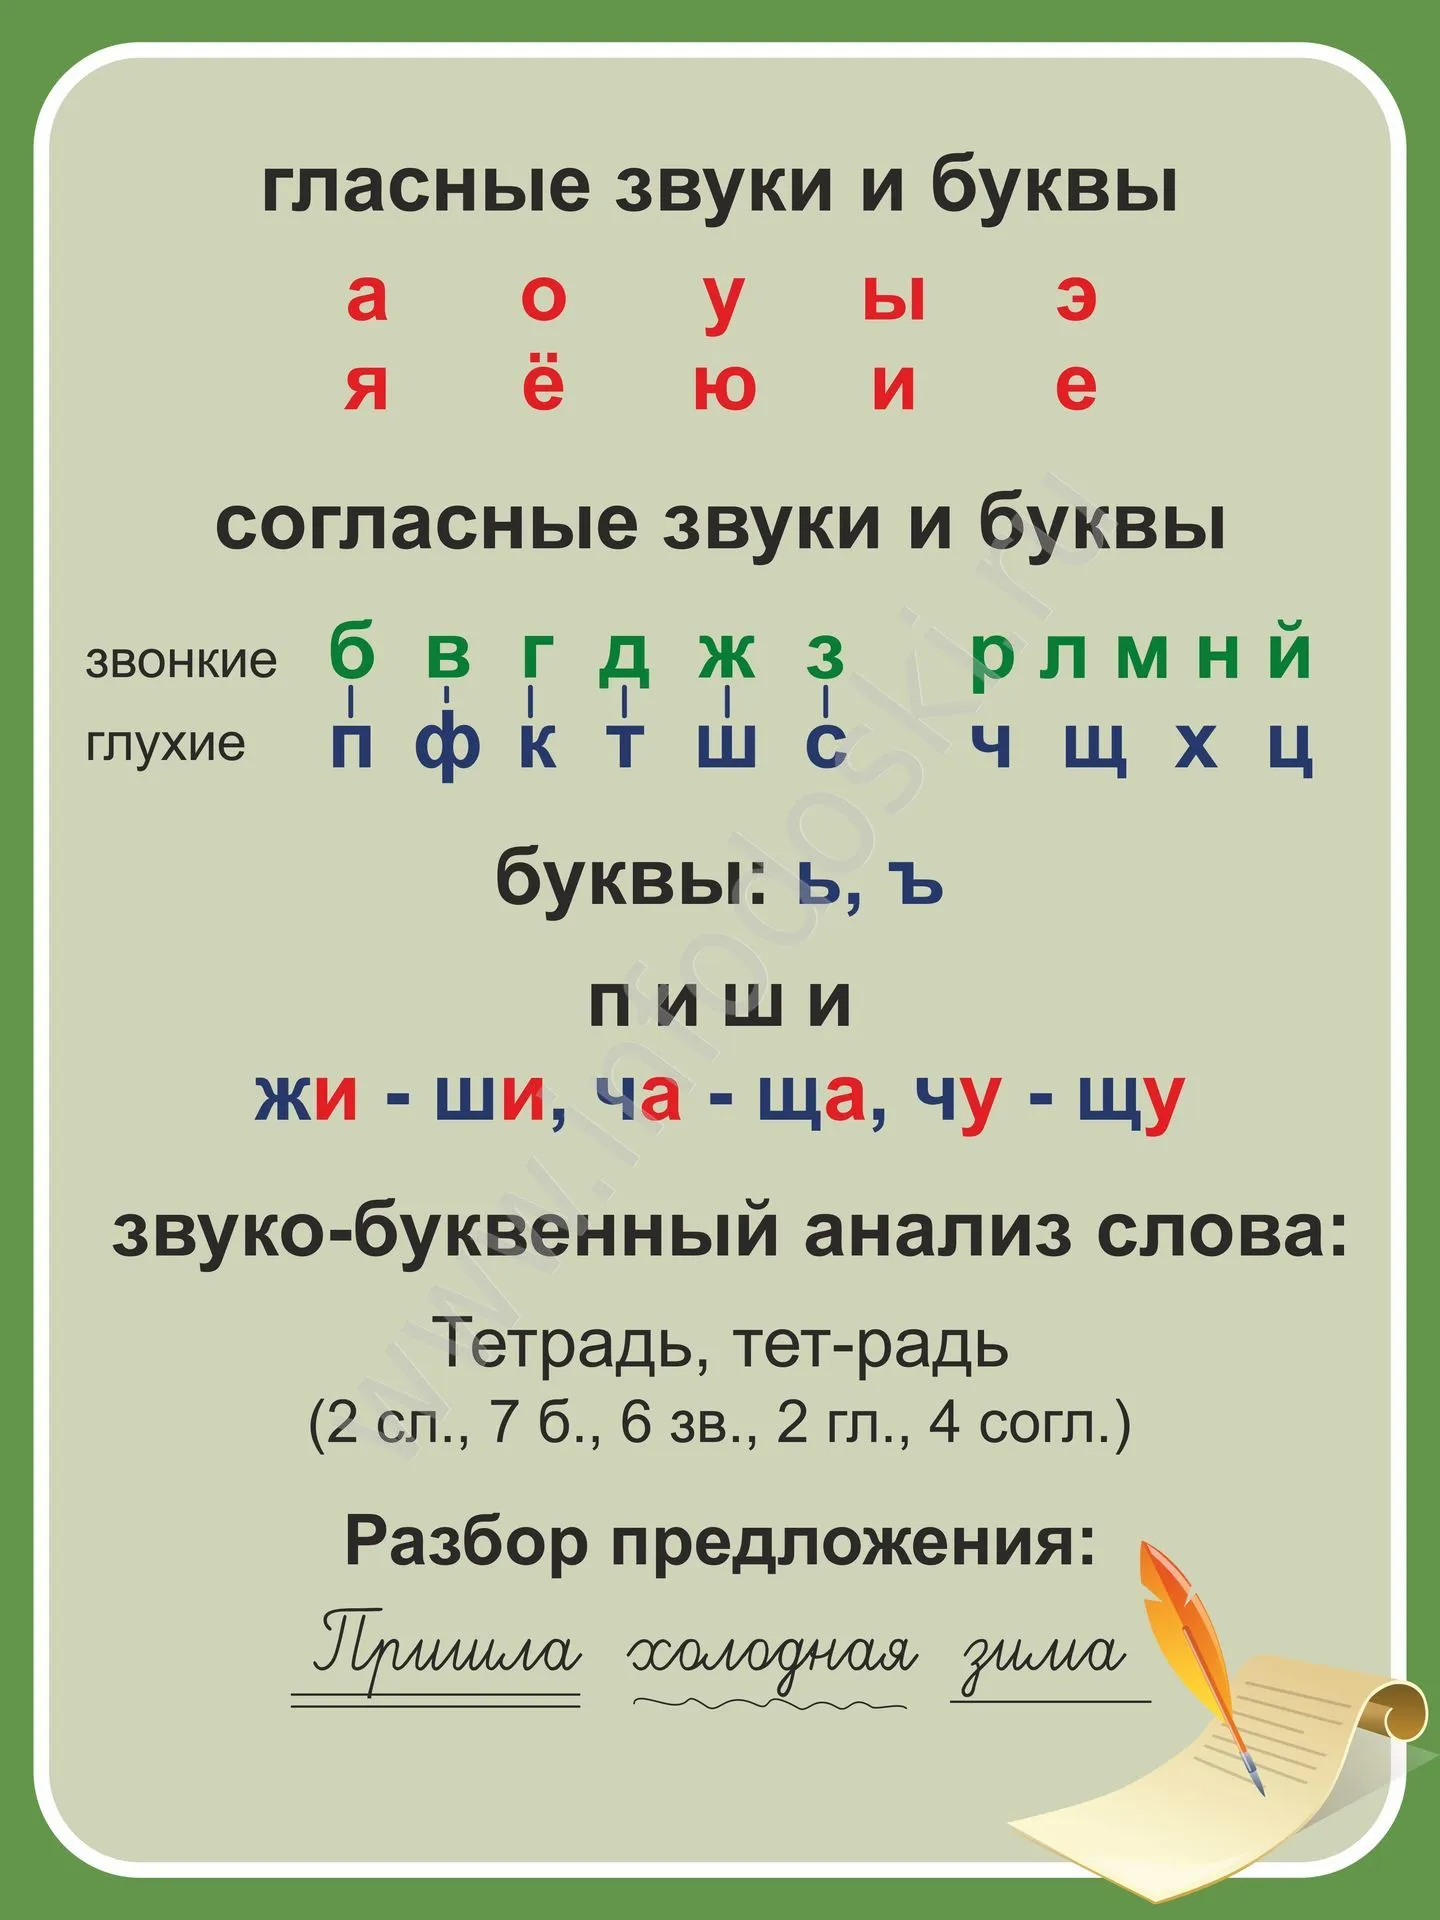 Сколько согласных в слове праздник. Гласные и согласные буквы и звуки в русском языке. Согласные и гласные буквы в русском языке. Гласные буквы русского алфавита таблица памятка для детей. Гласные буквы и звуки.